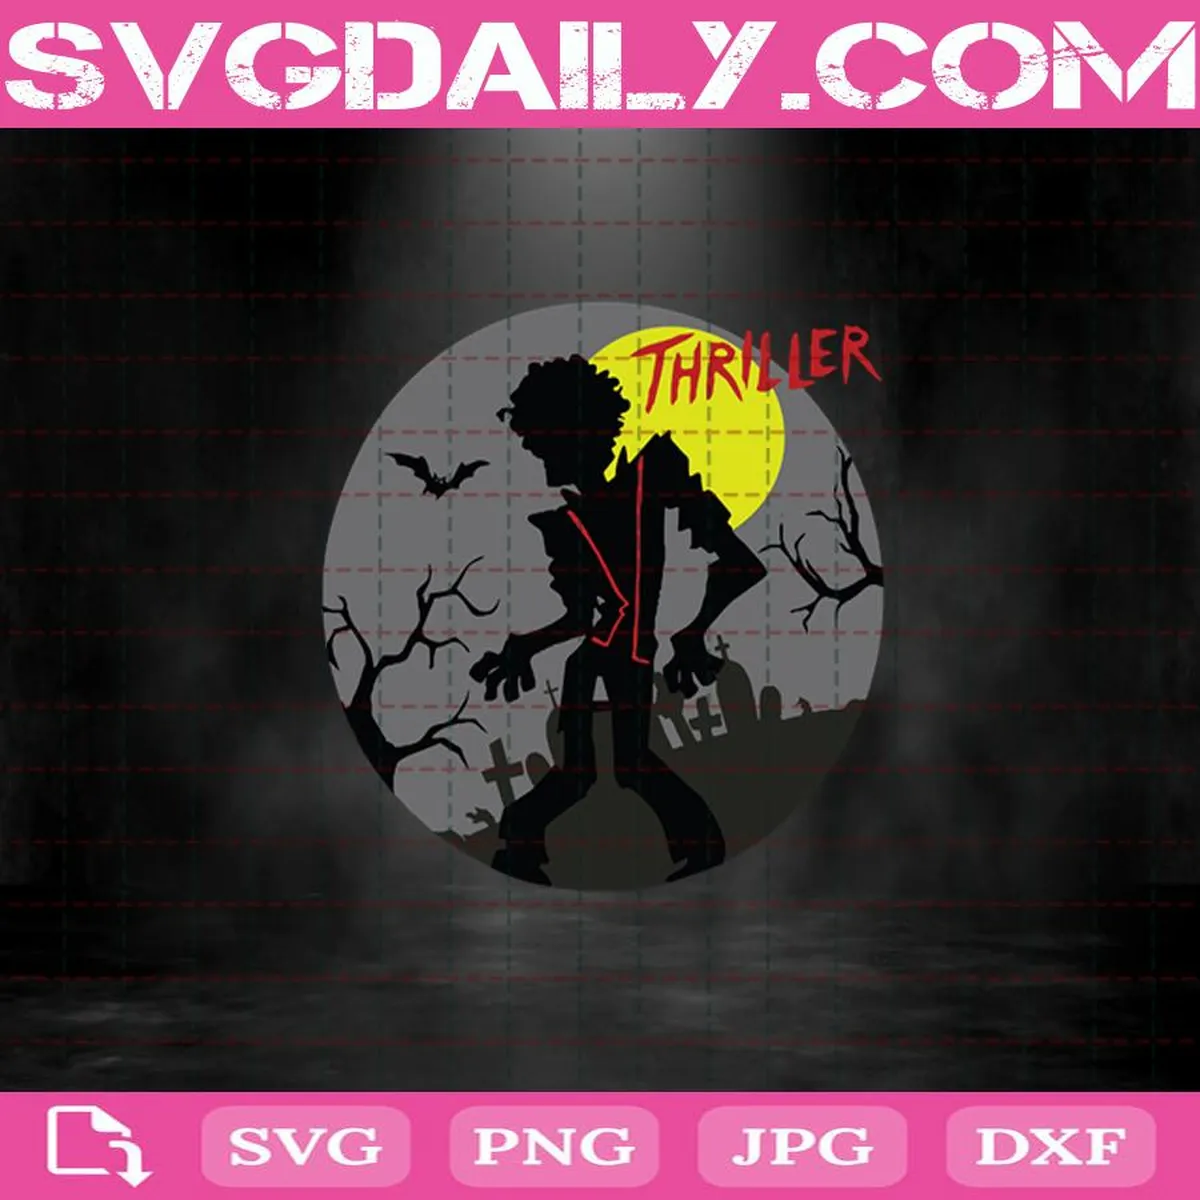 Thriller Svg, Michael Jackson Svg, Music Svg, Halloween Svg, Thriller Album Svg Png Dxf Eps Cut File Instant Download